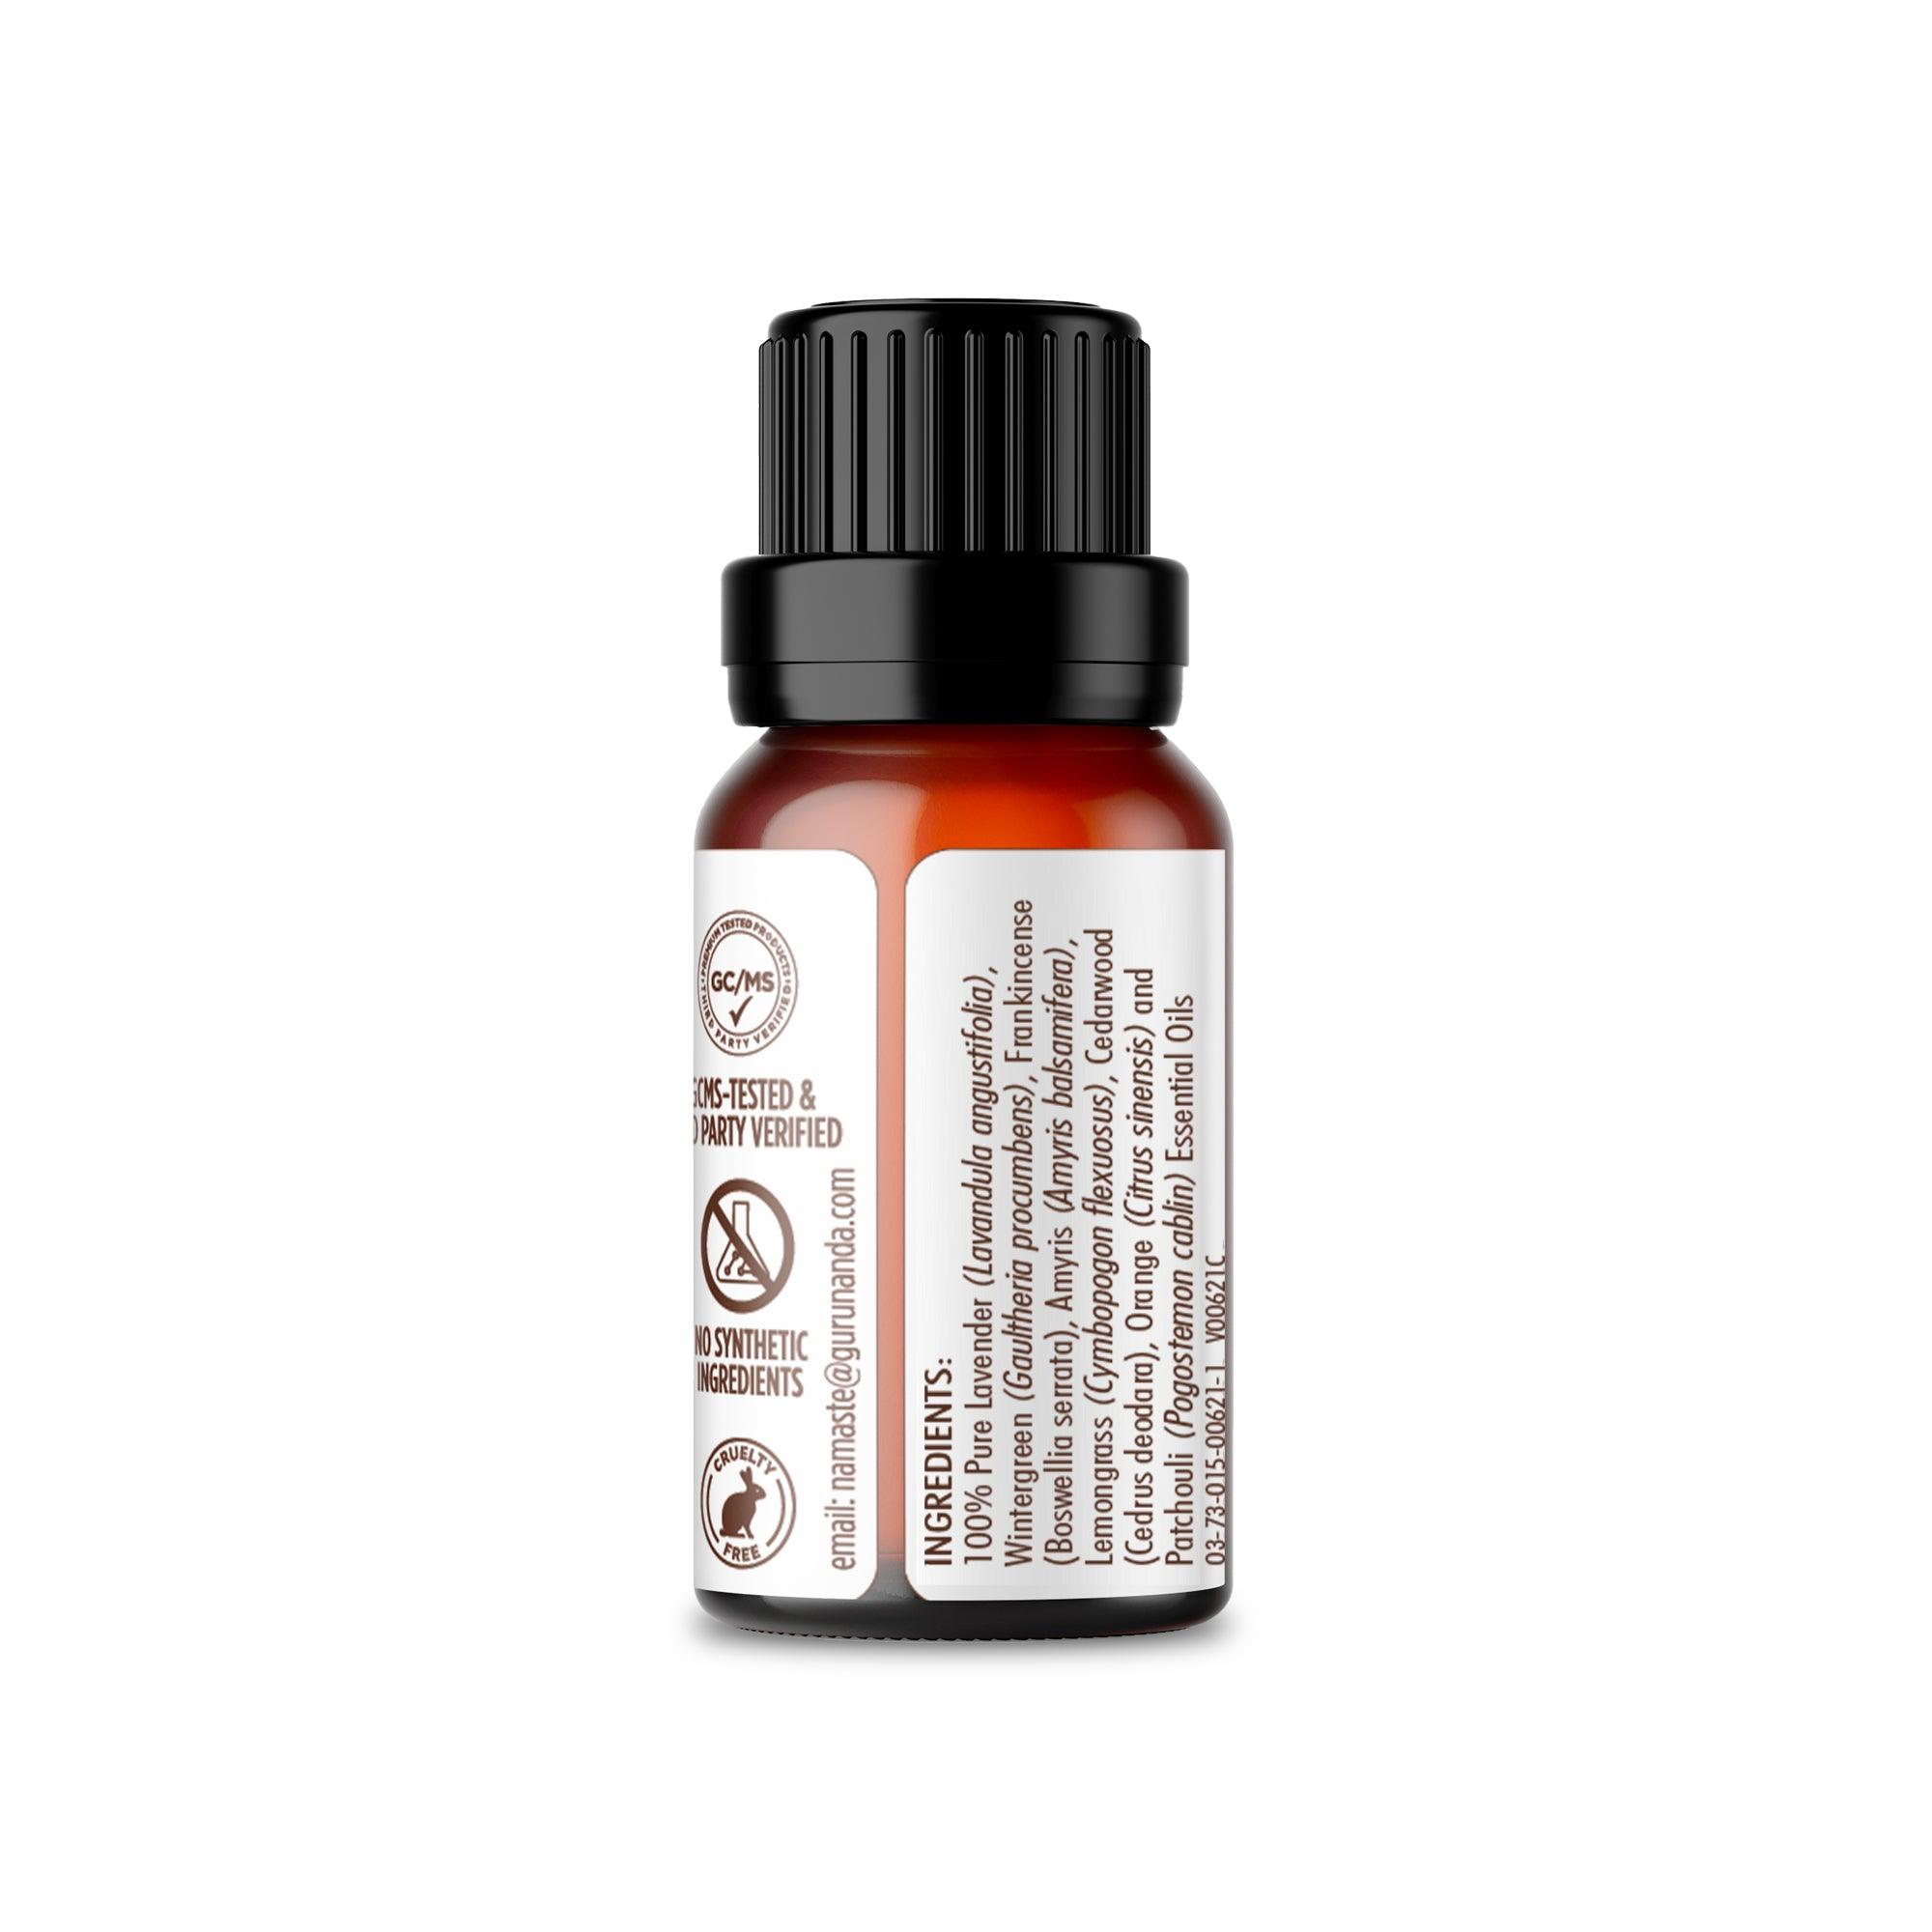 Calming Sleep Essential Oil Blend (2-Pack) - GuruNanda